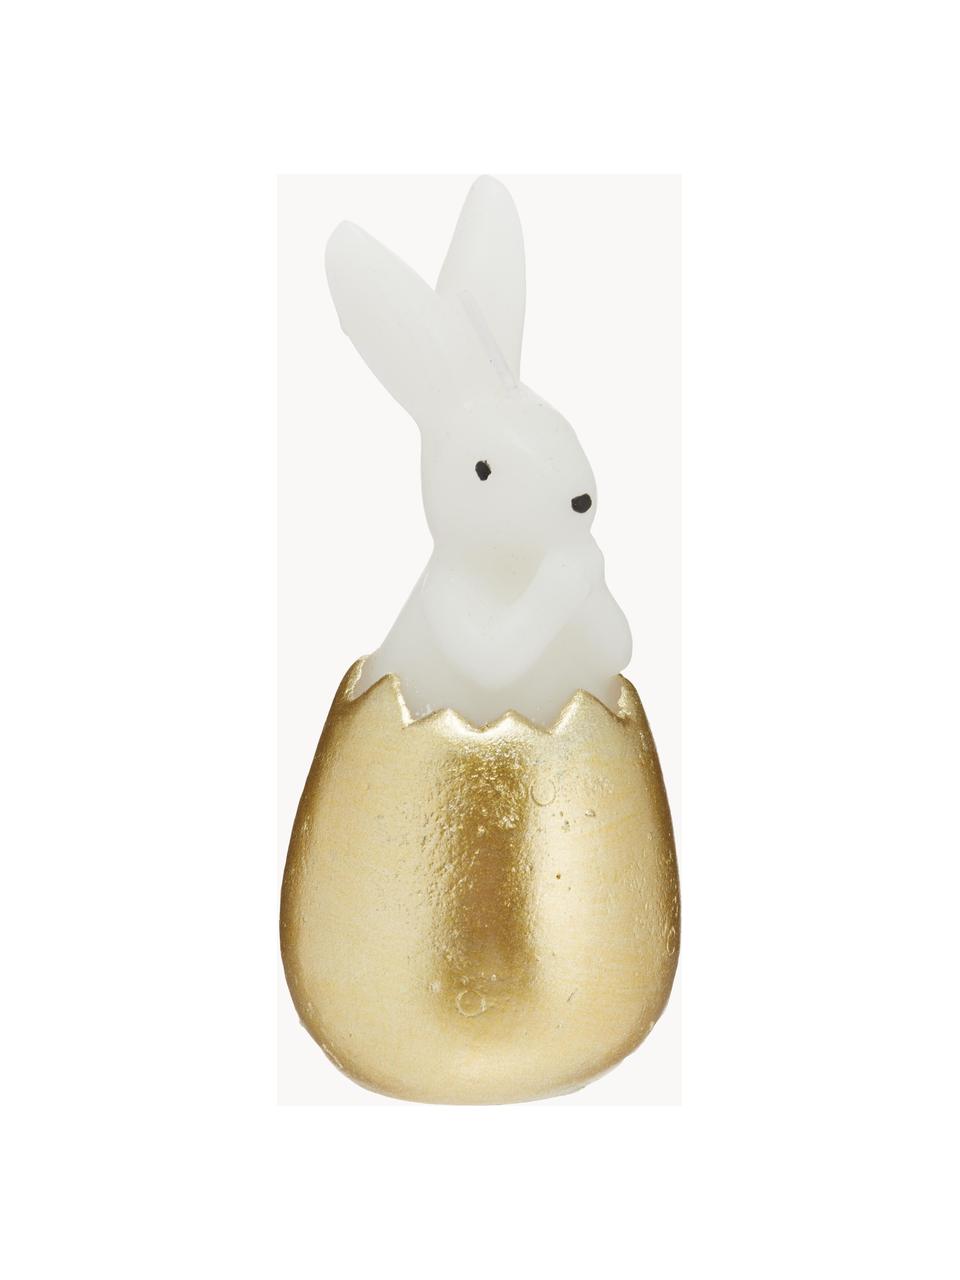 Decoratieve kaars Bunny, Was, Wit, goudkleurig, Ø 6 x H 13 cm